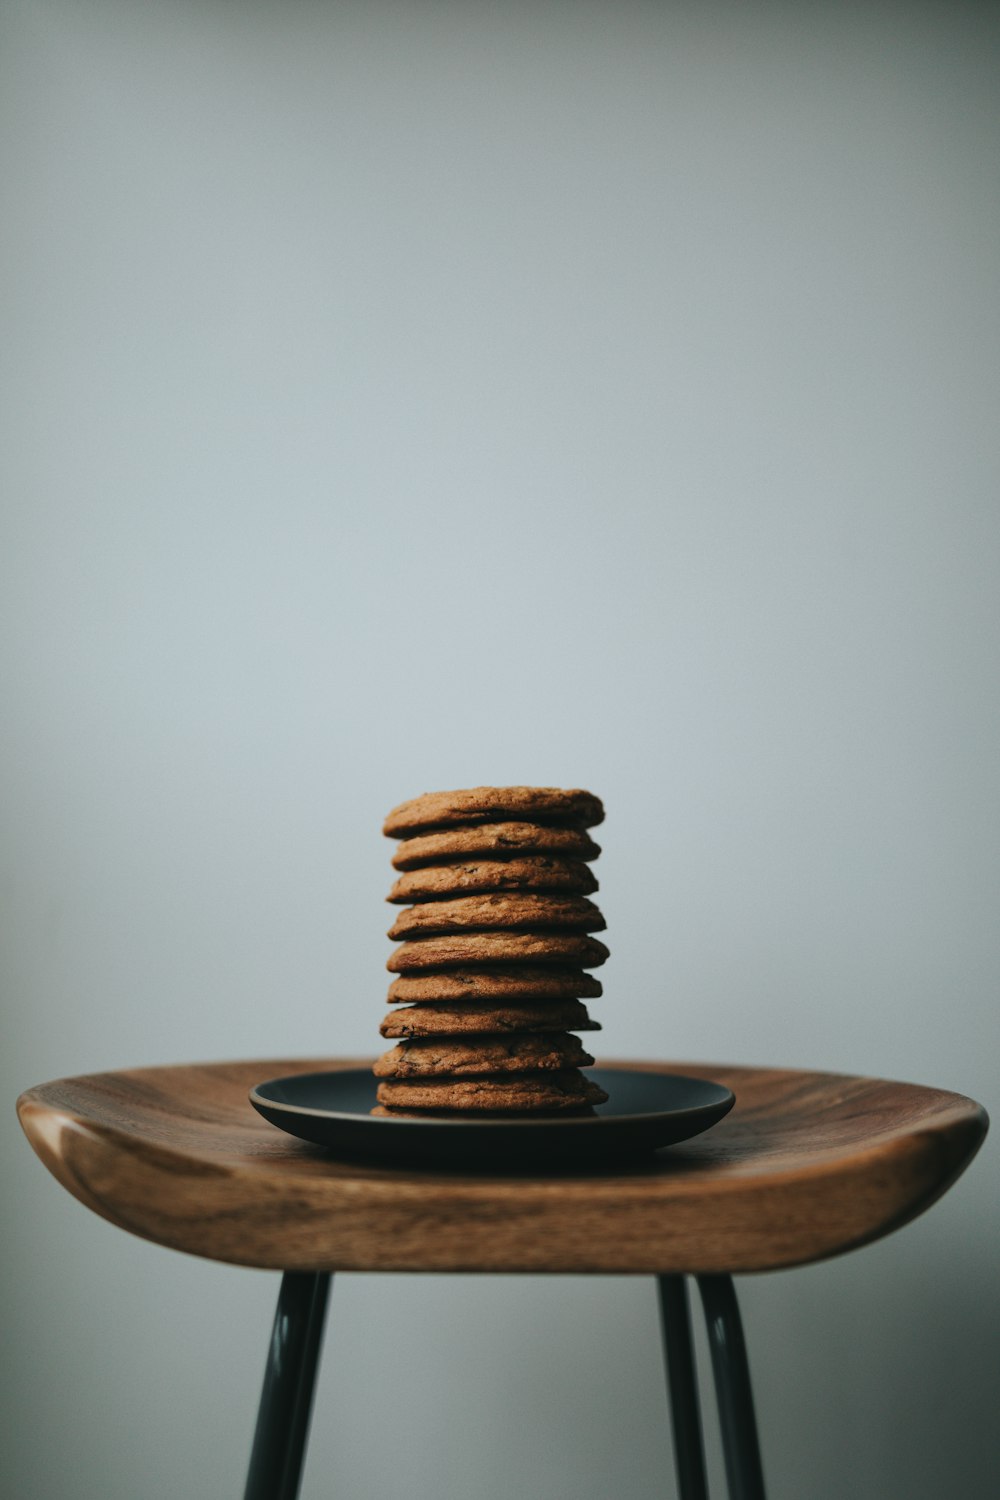 pila de galletas marrones en un plato de cerámica negra